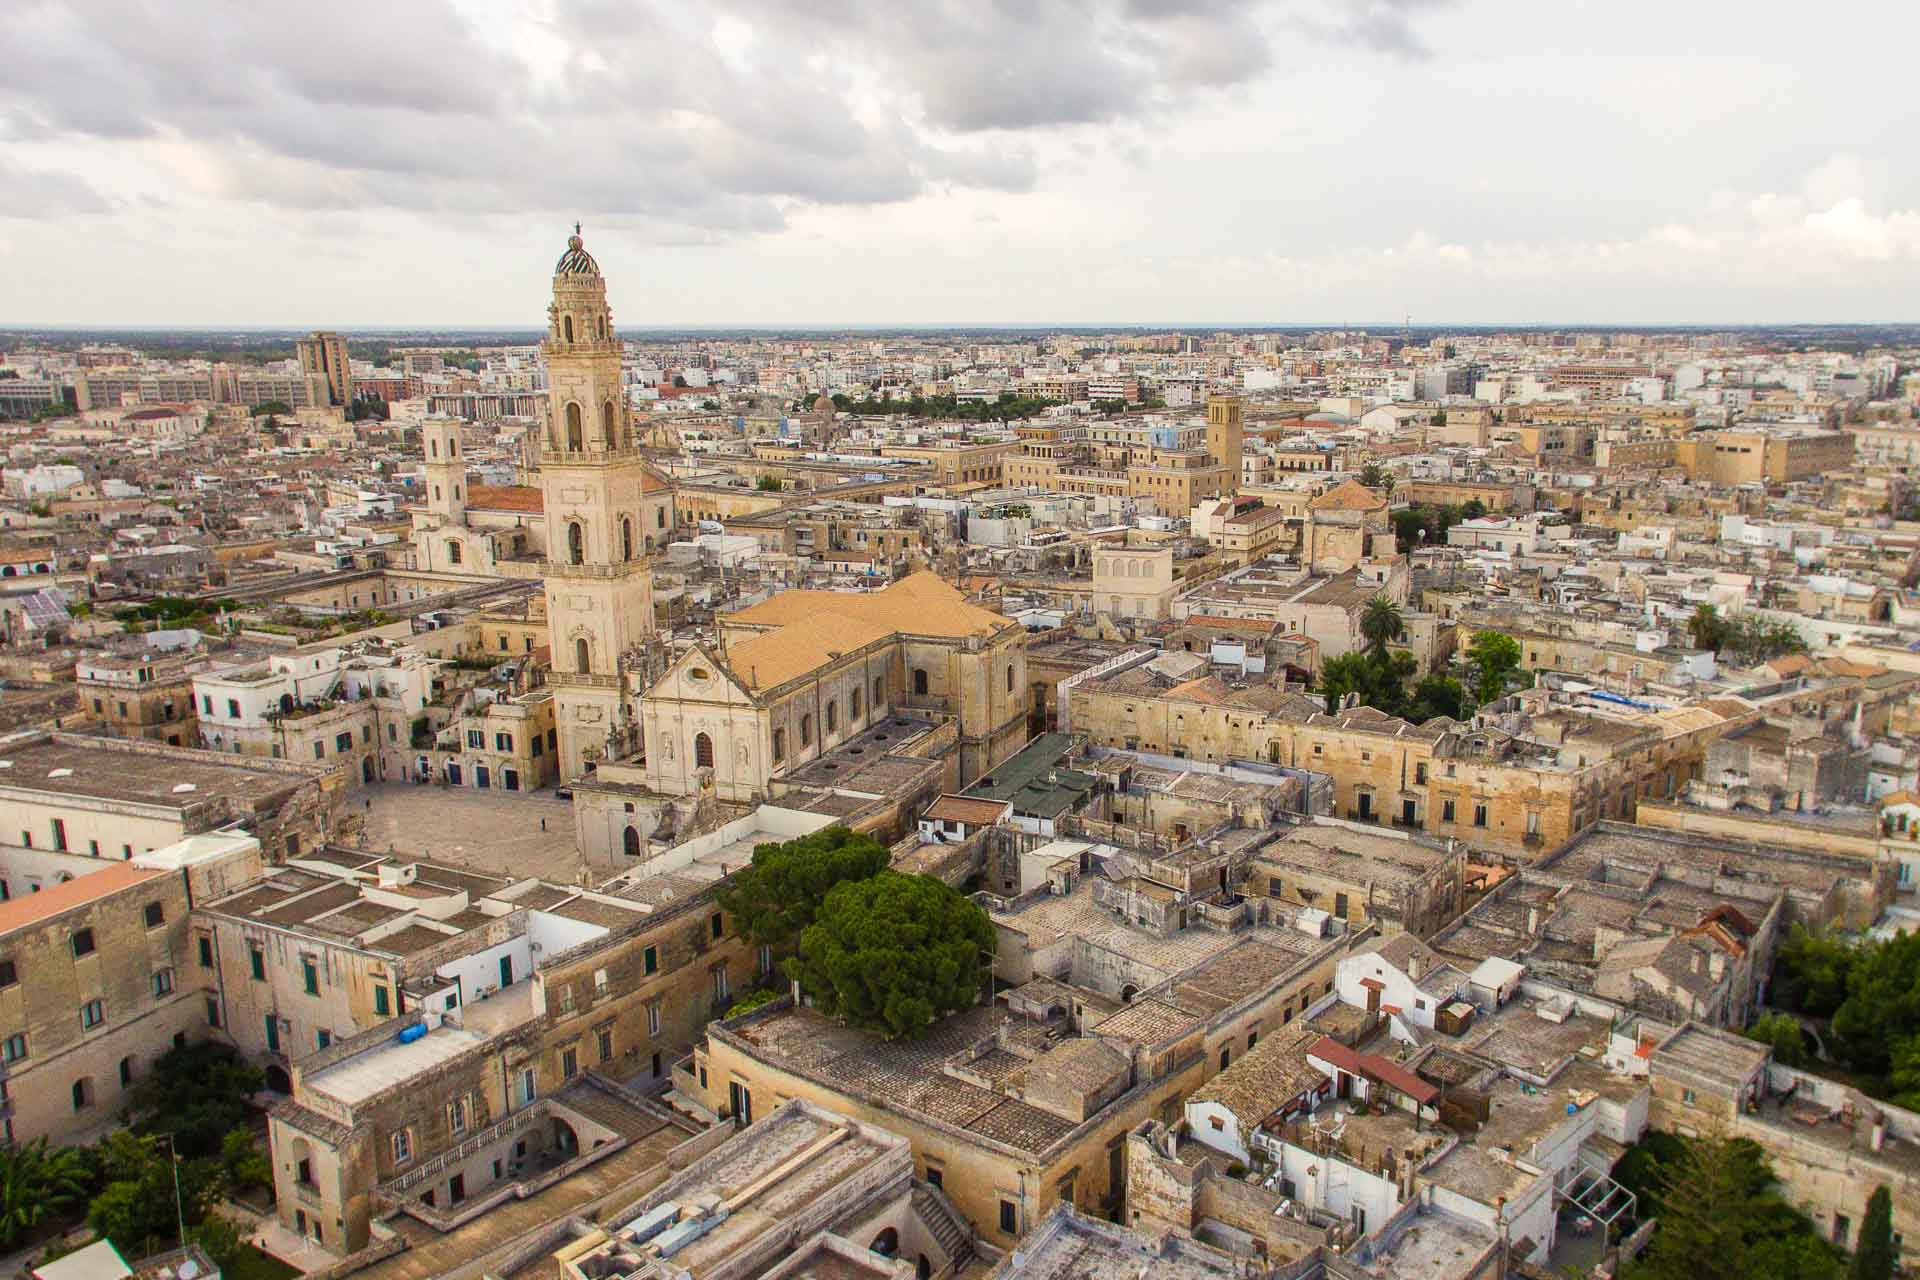 Vista aérea de Lecce com a catedral no centro e as casas barrocas